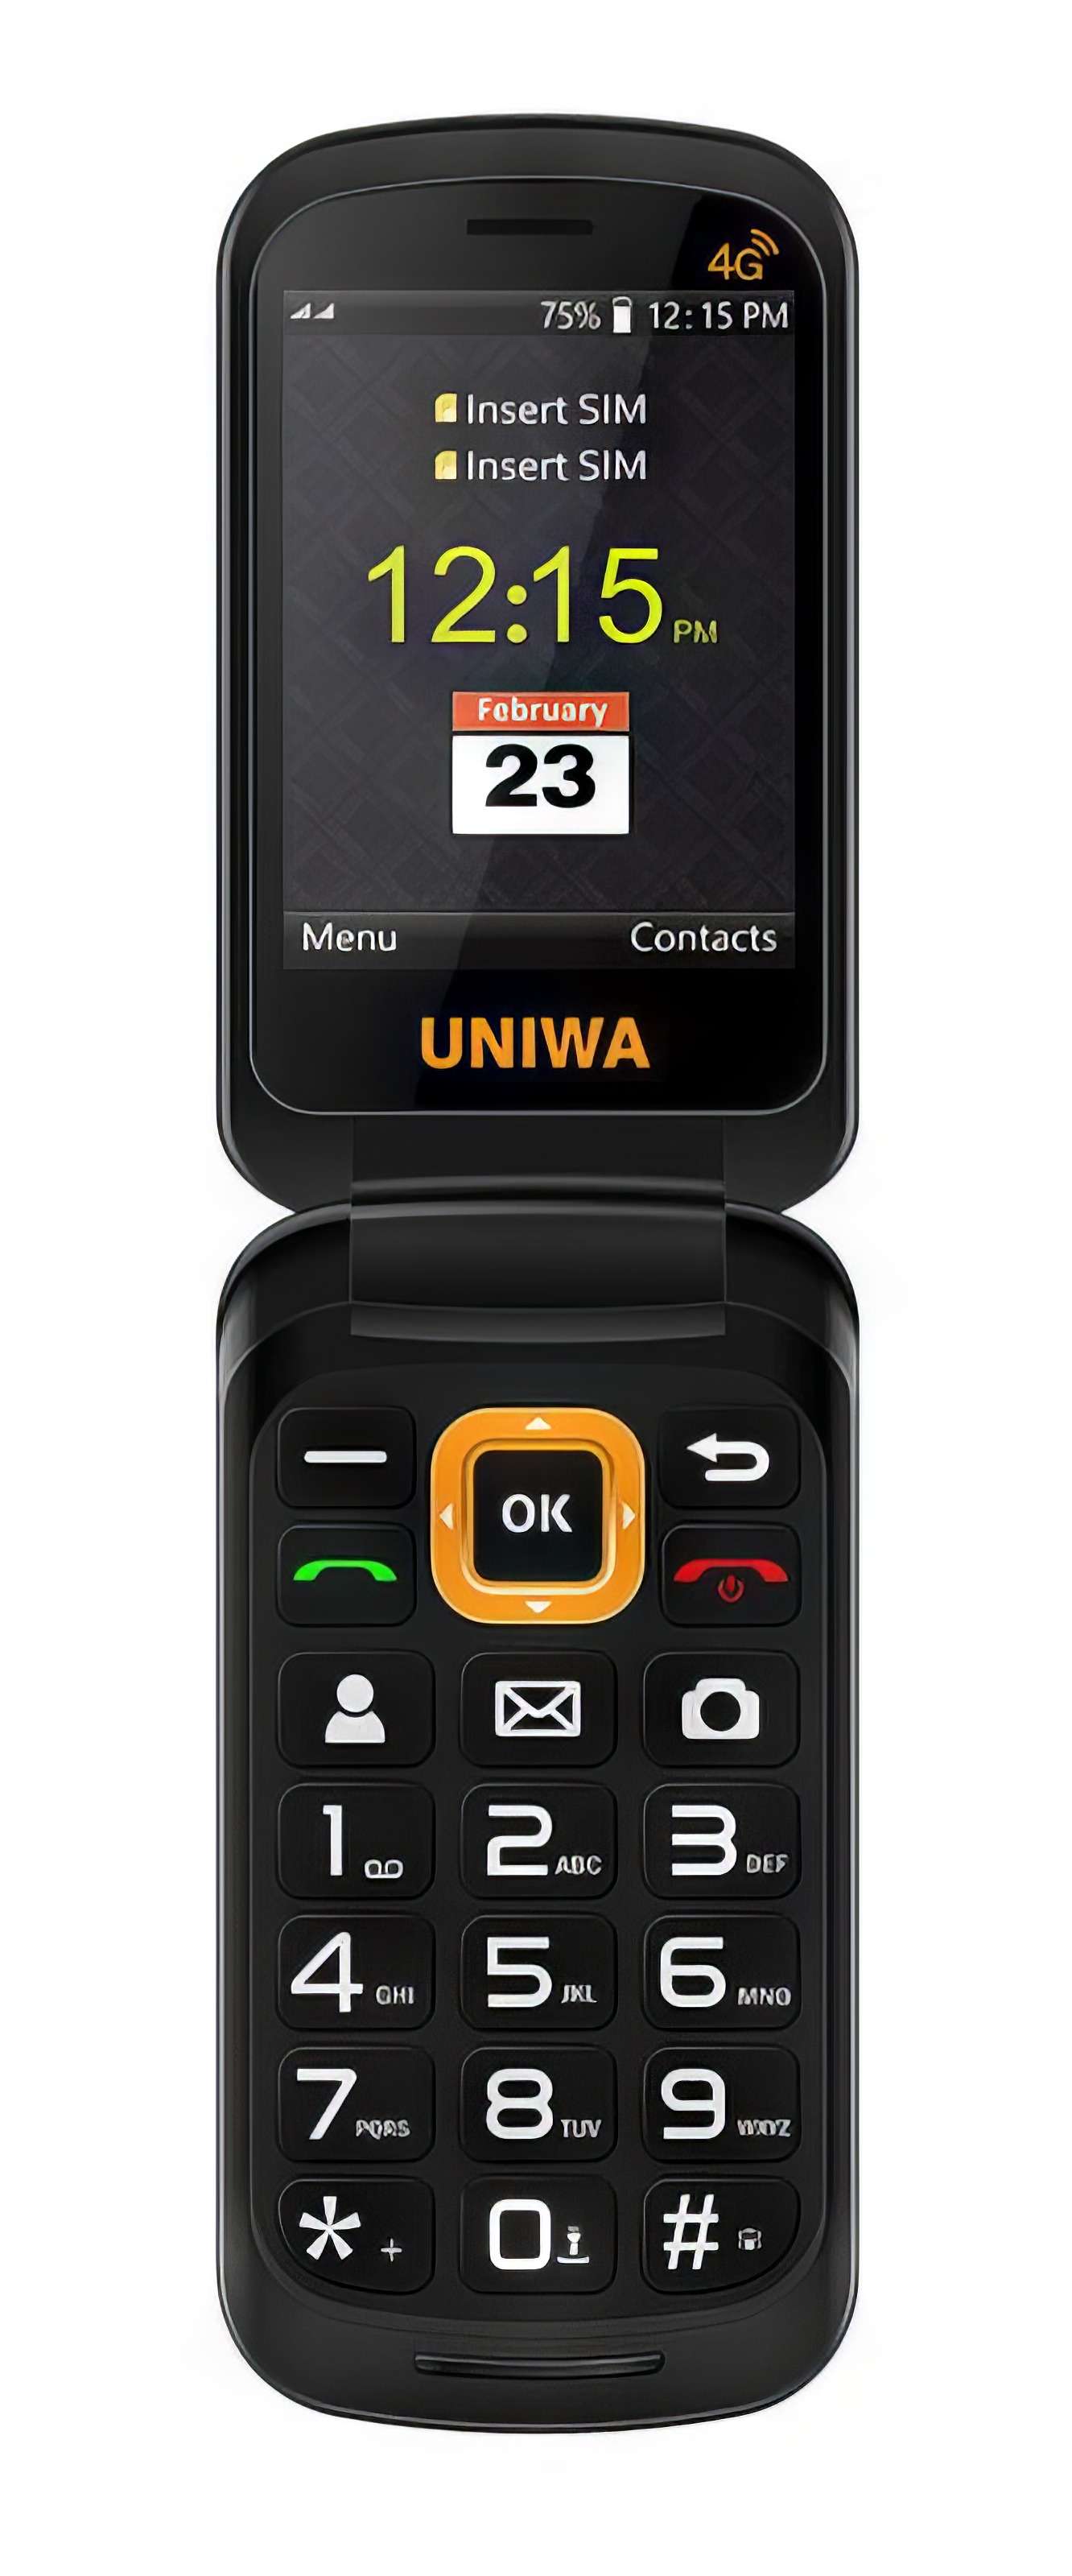 Мобильный телефон UNIWA V909T Flip Phone Gray мобильный телефон uniwa v909t flip phone gray